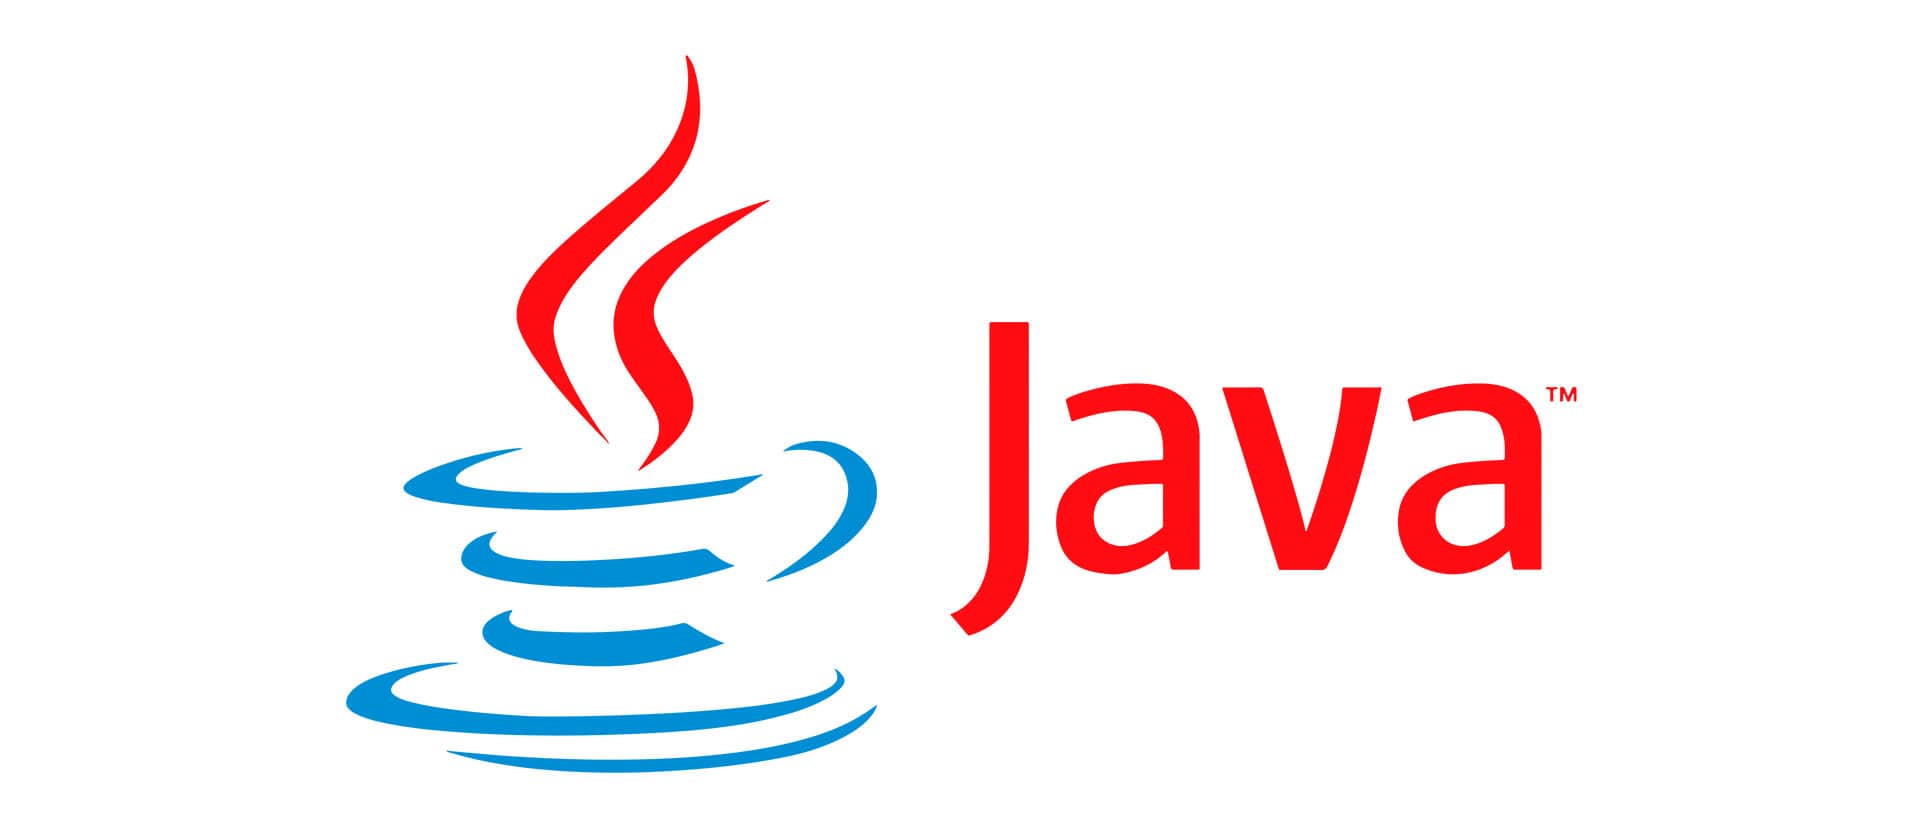 Java rendering. Java язык программирования logo. Jvaязык программирования логотип. Джава язык программирования логотип. Жавалоготип язык программирования.